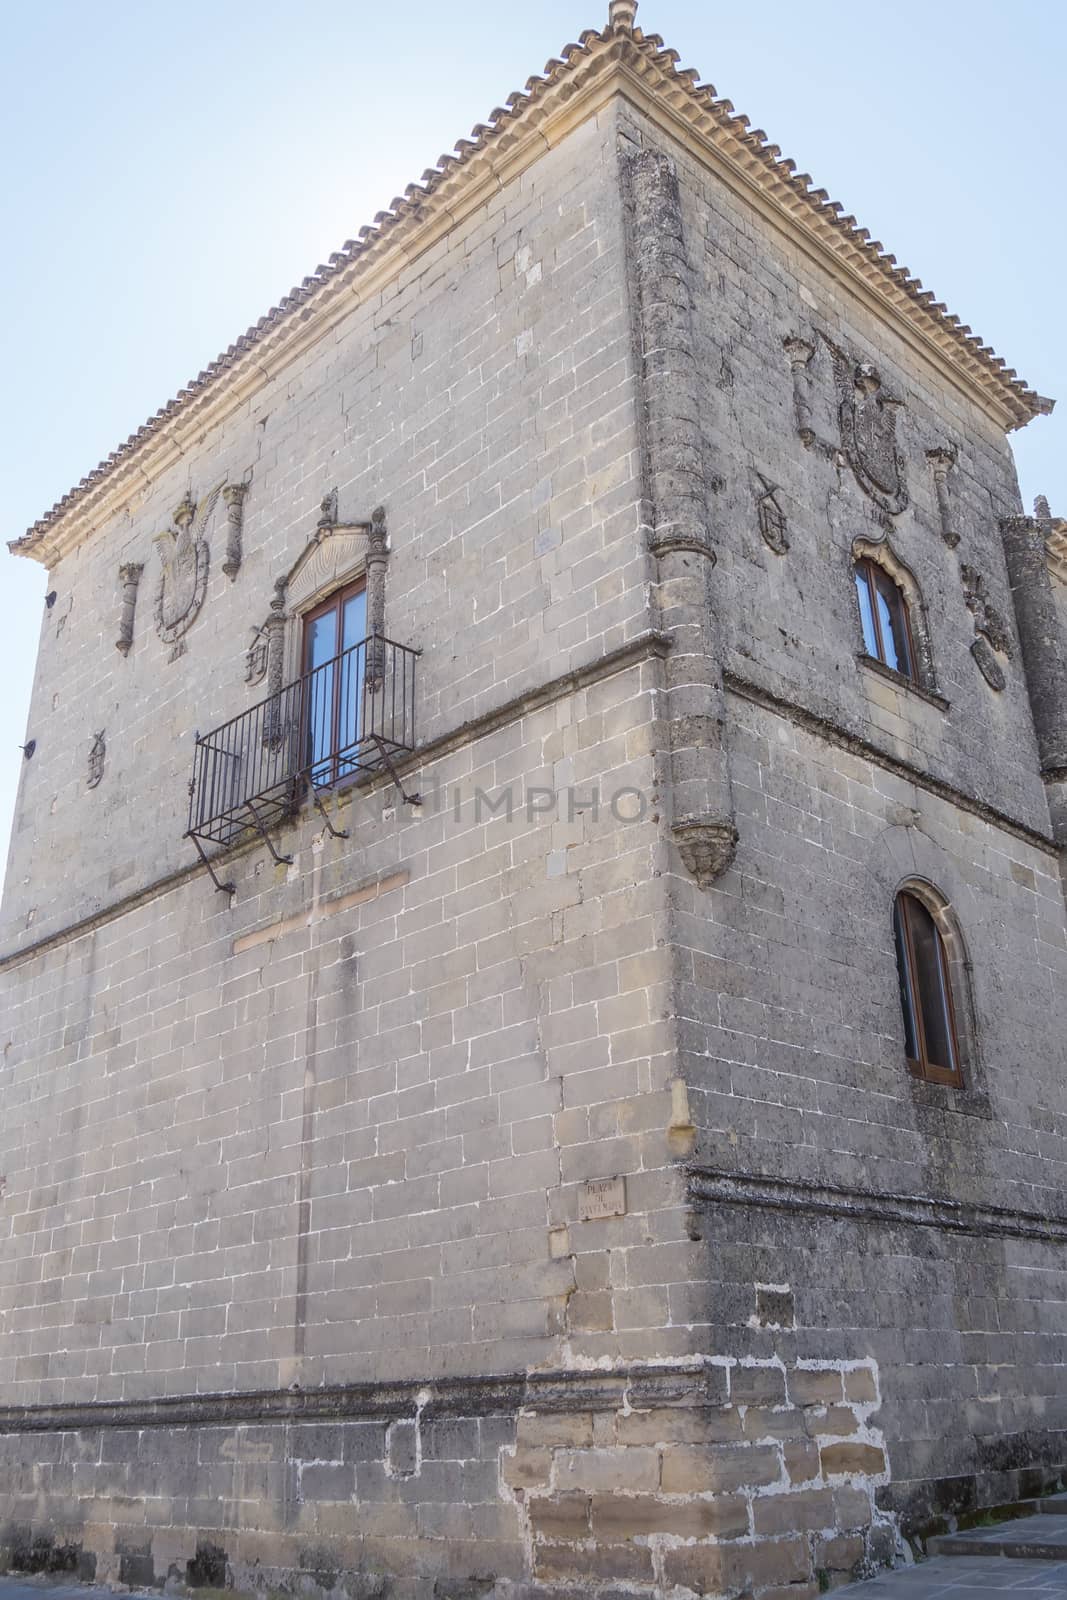 Casas consistoriales altas, Baeza, Jaen, Spain by max8xam